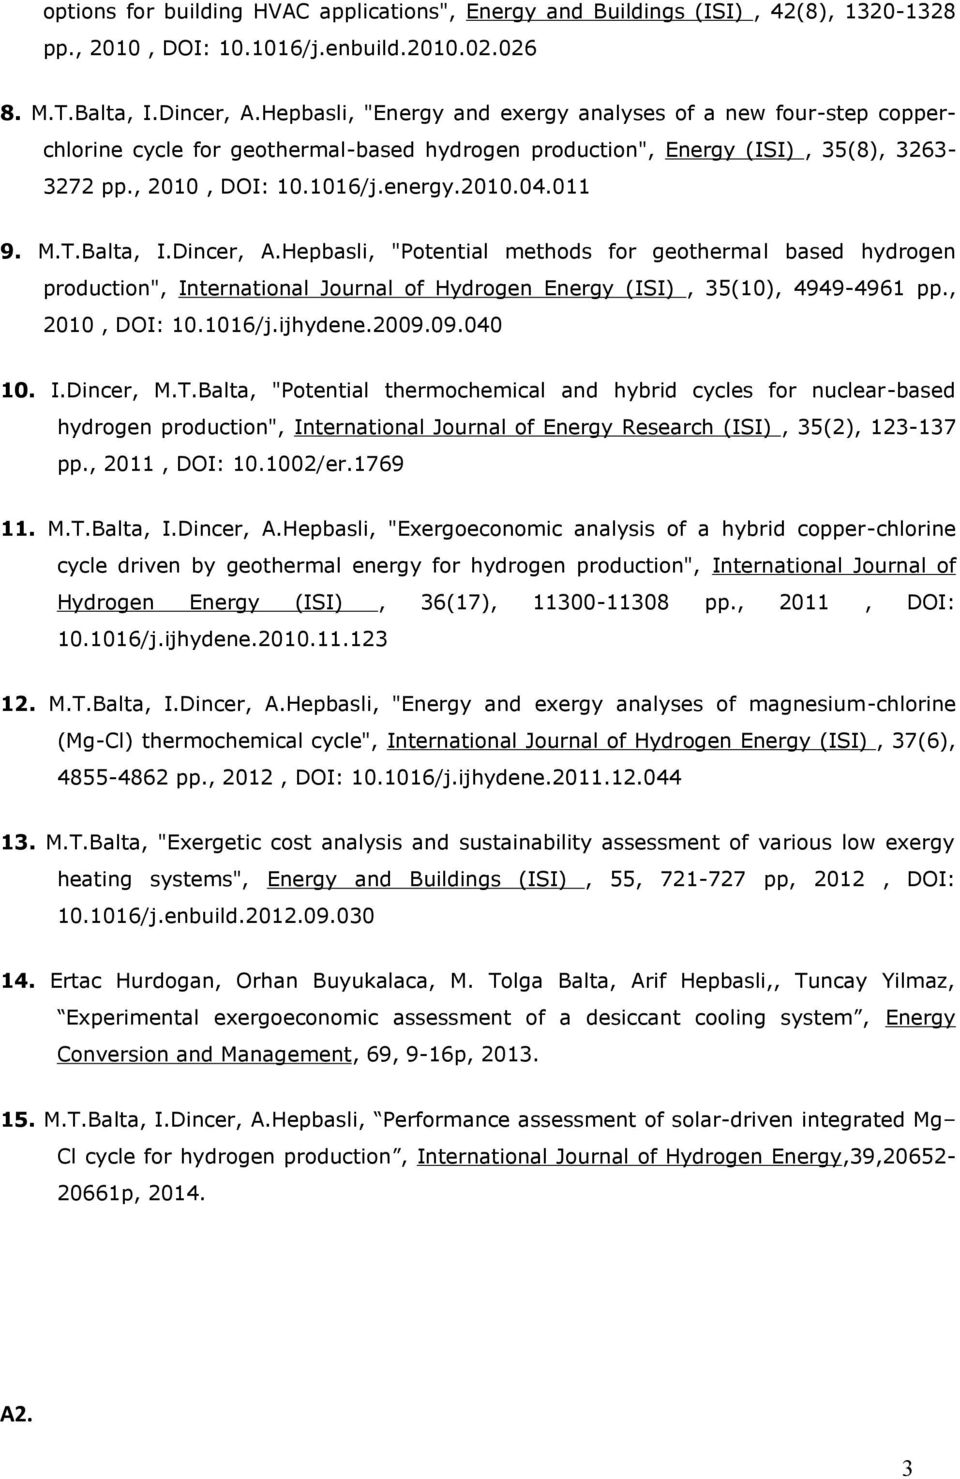 M.T.Balta, I.Dincer, A.Hepbasli, "Potential methods for geothermal based hydrogen production", International Journal of Hydrogen Energy (ISI), 35(10), 4949-4961 pp., 2010, DOI: 10.1016/j.ijhydene.